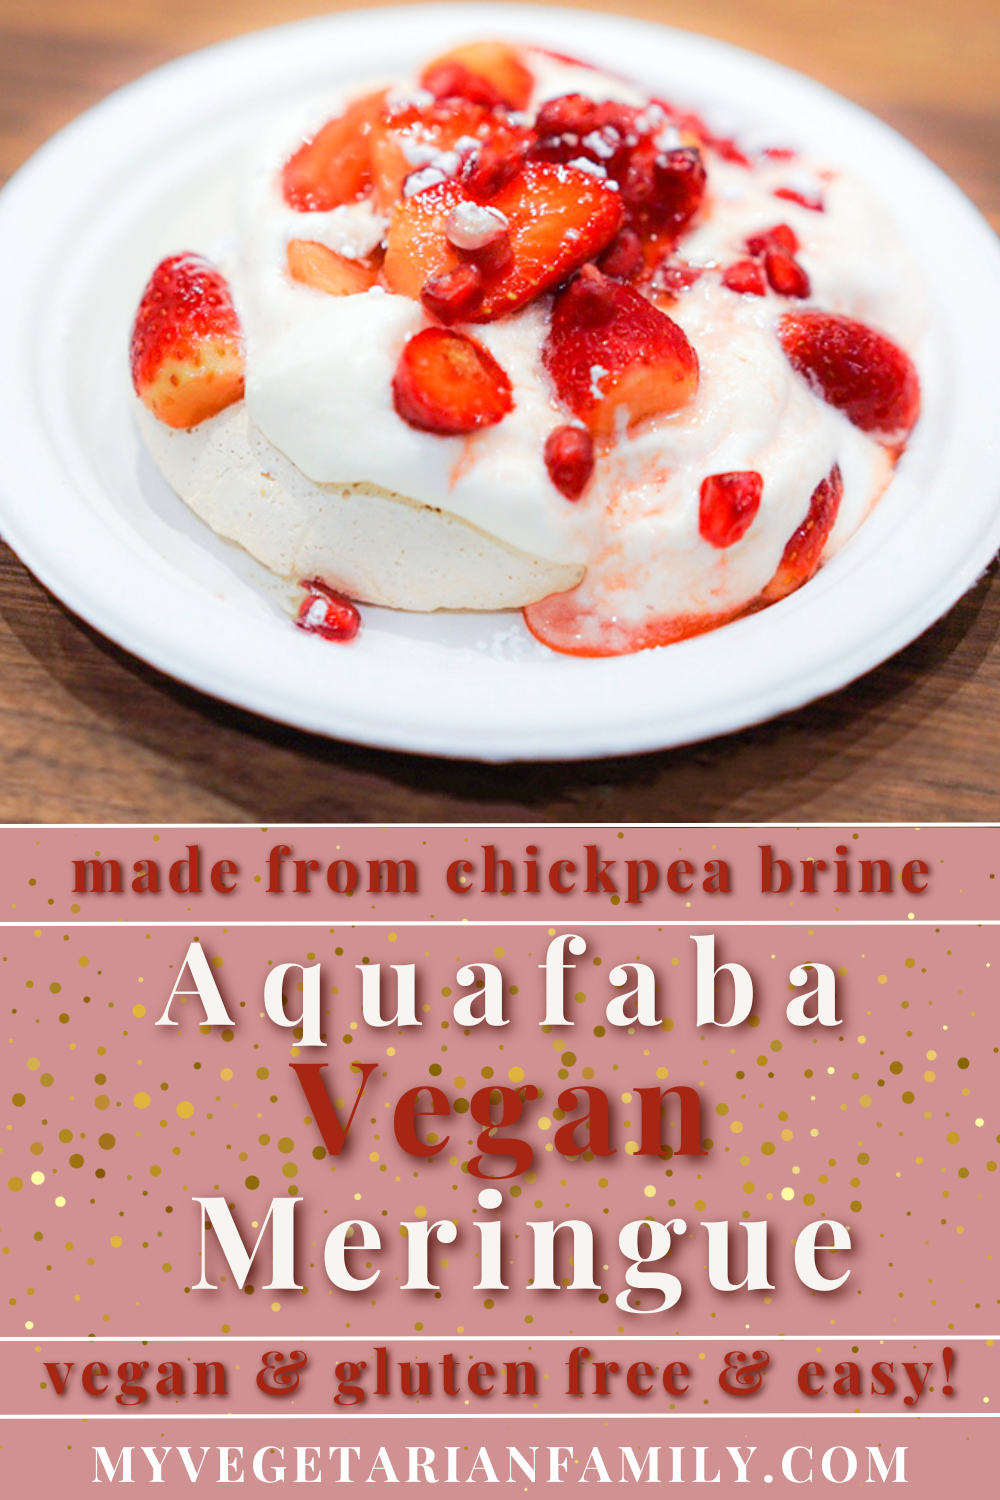 Aquafaba Vegan Meringue | My Vegetarian Family #aquafabameringue #veganmeringue